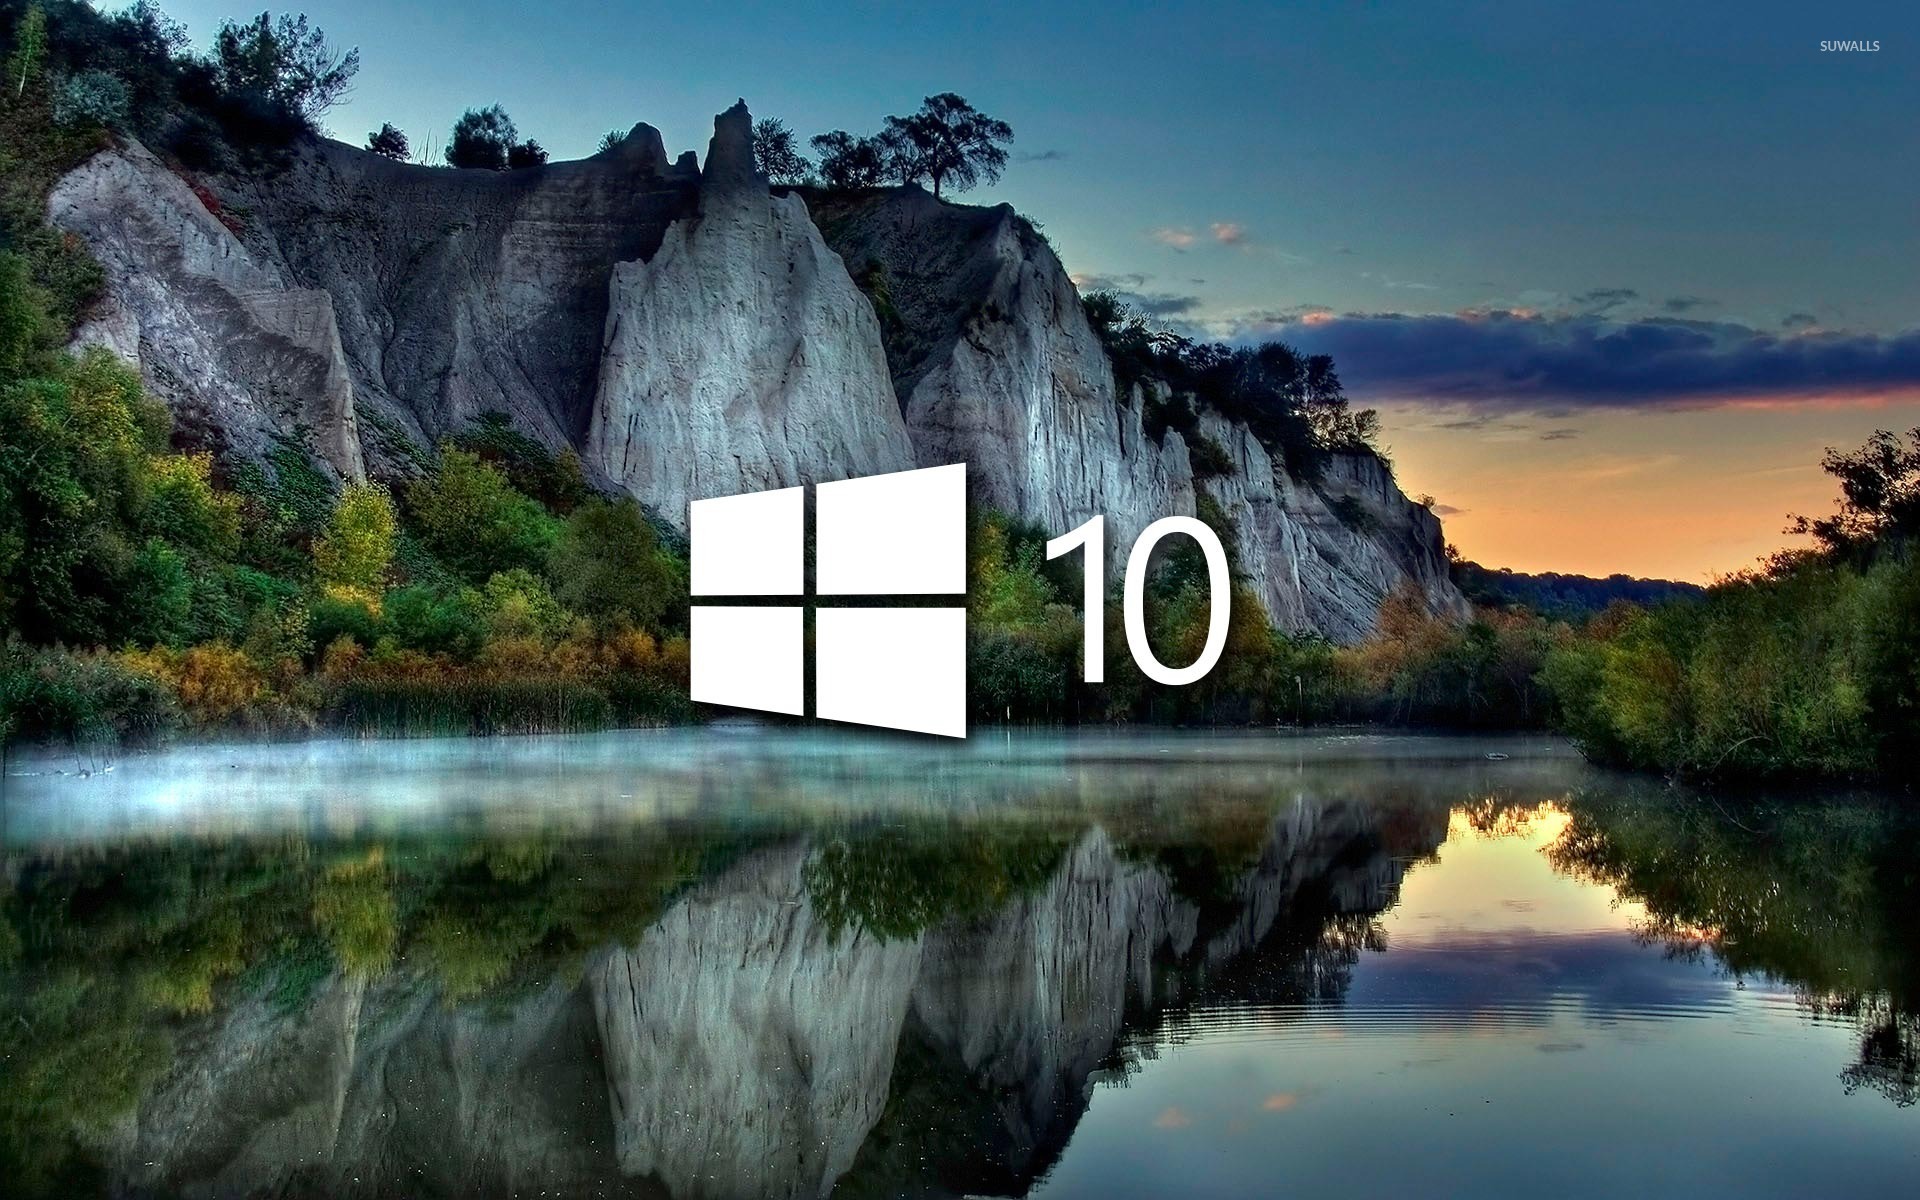 Обои на 10 4. Красивая заставка виндовс 10. Фоновый рисунок виндовс 10. Рисунок рабочего стола Windows 10. Картинка для фона рабочего стола Windows 10.